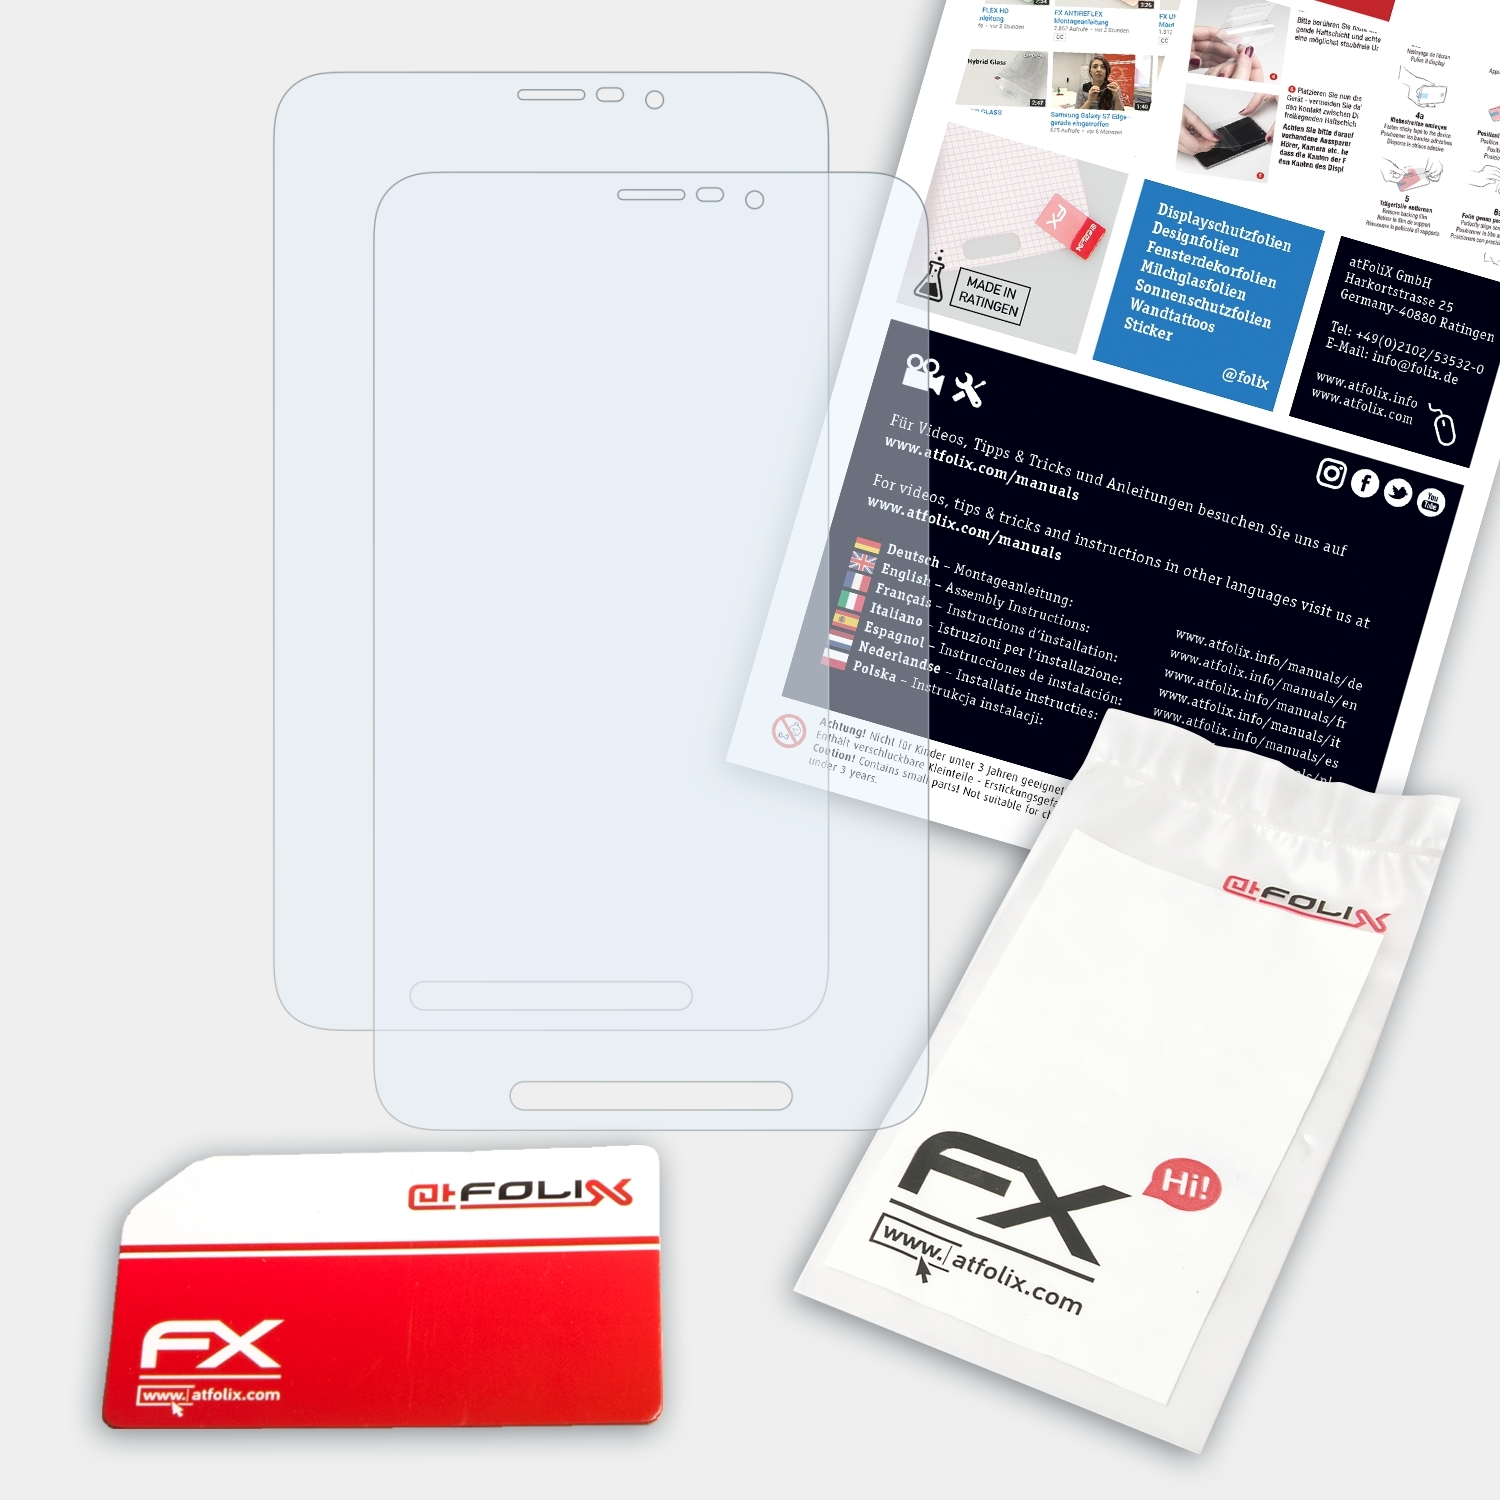 FX-Clear 8.0 Tab (SM-T365)) 2x Active Galaxy Samsung Displayschutz(für ATFOLIX